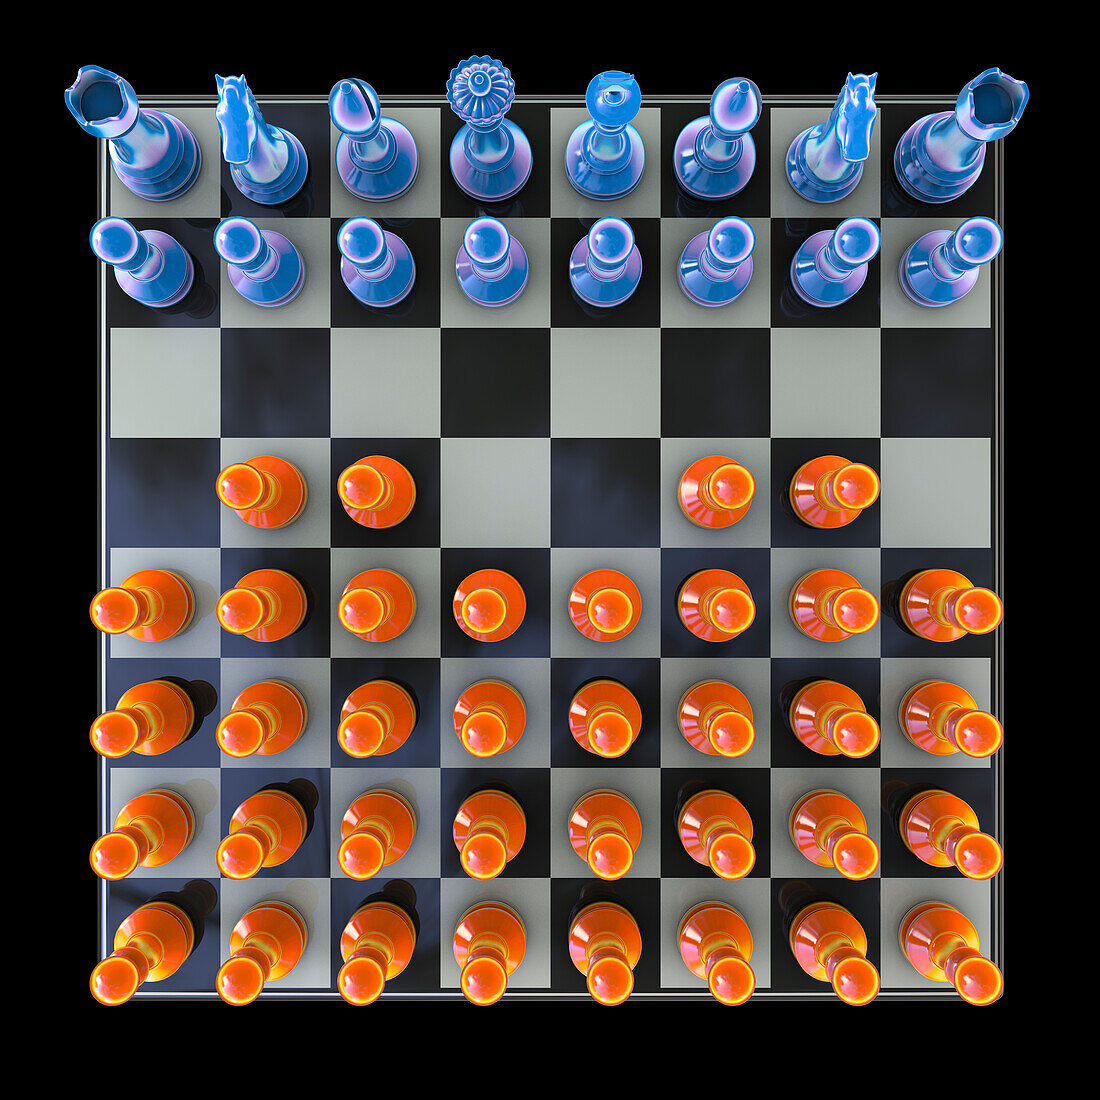 Horde variant of chess, illustration